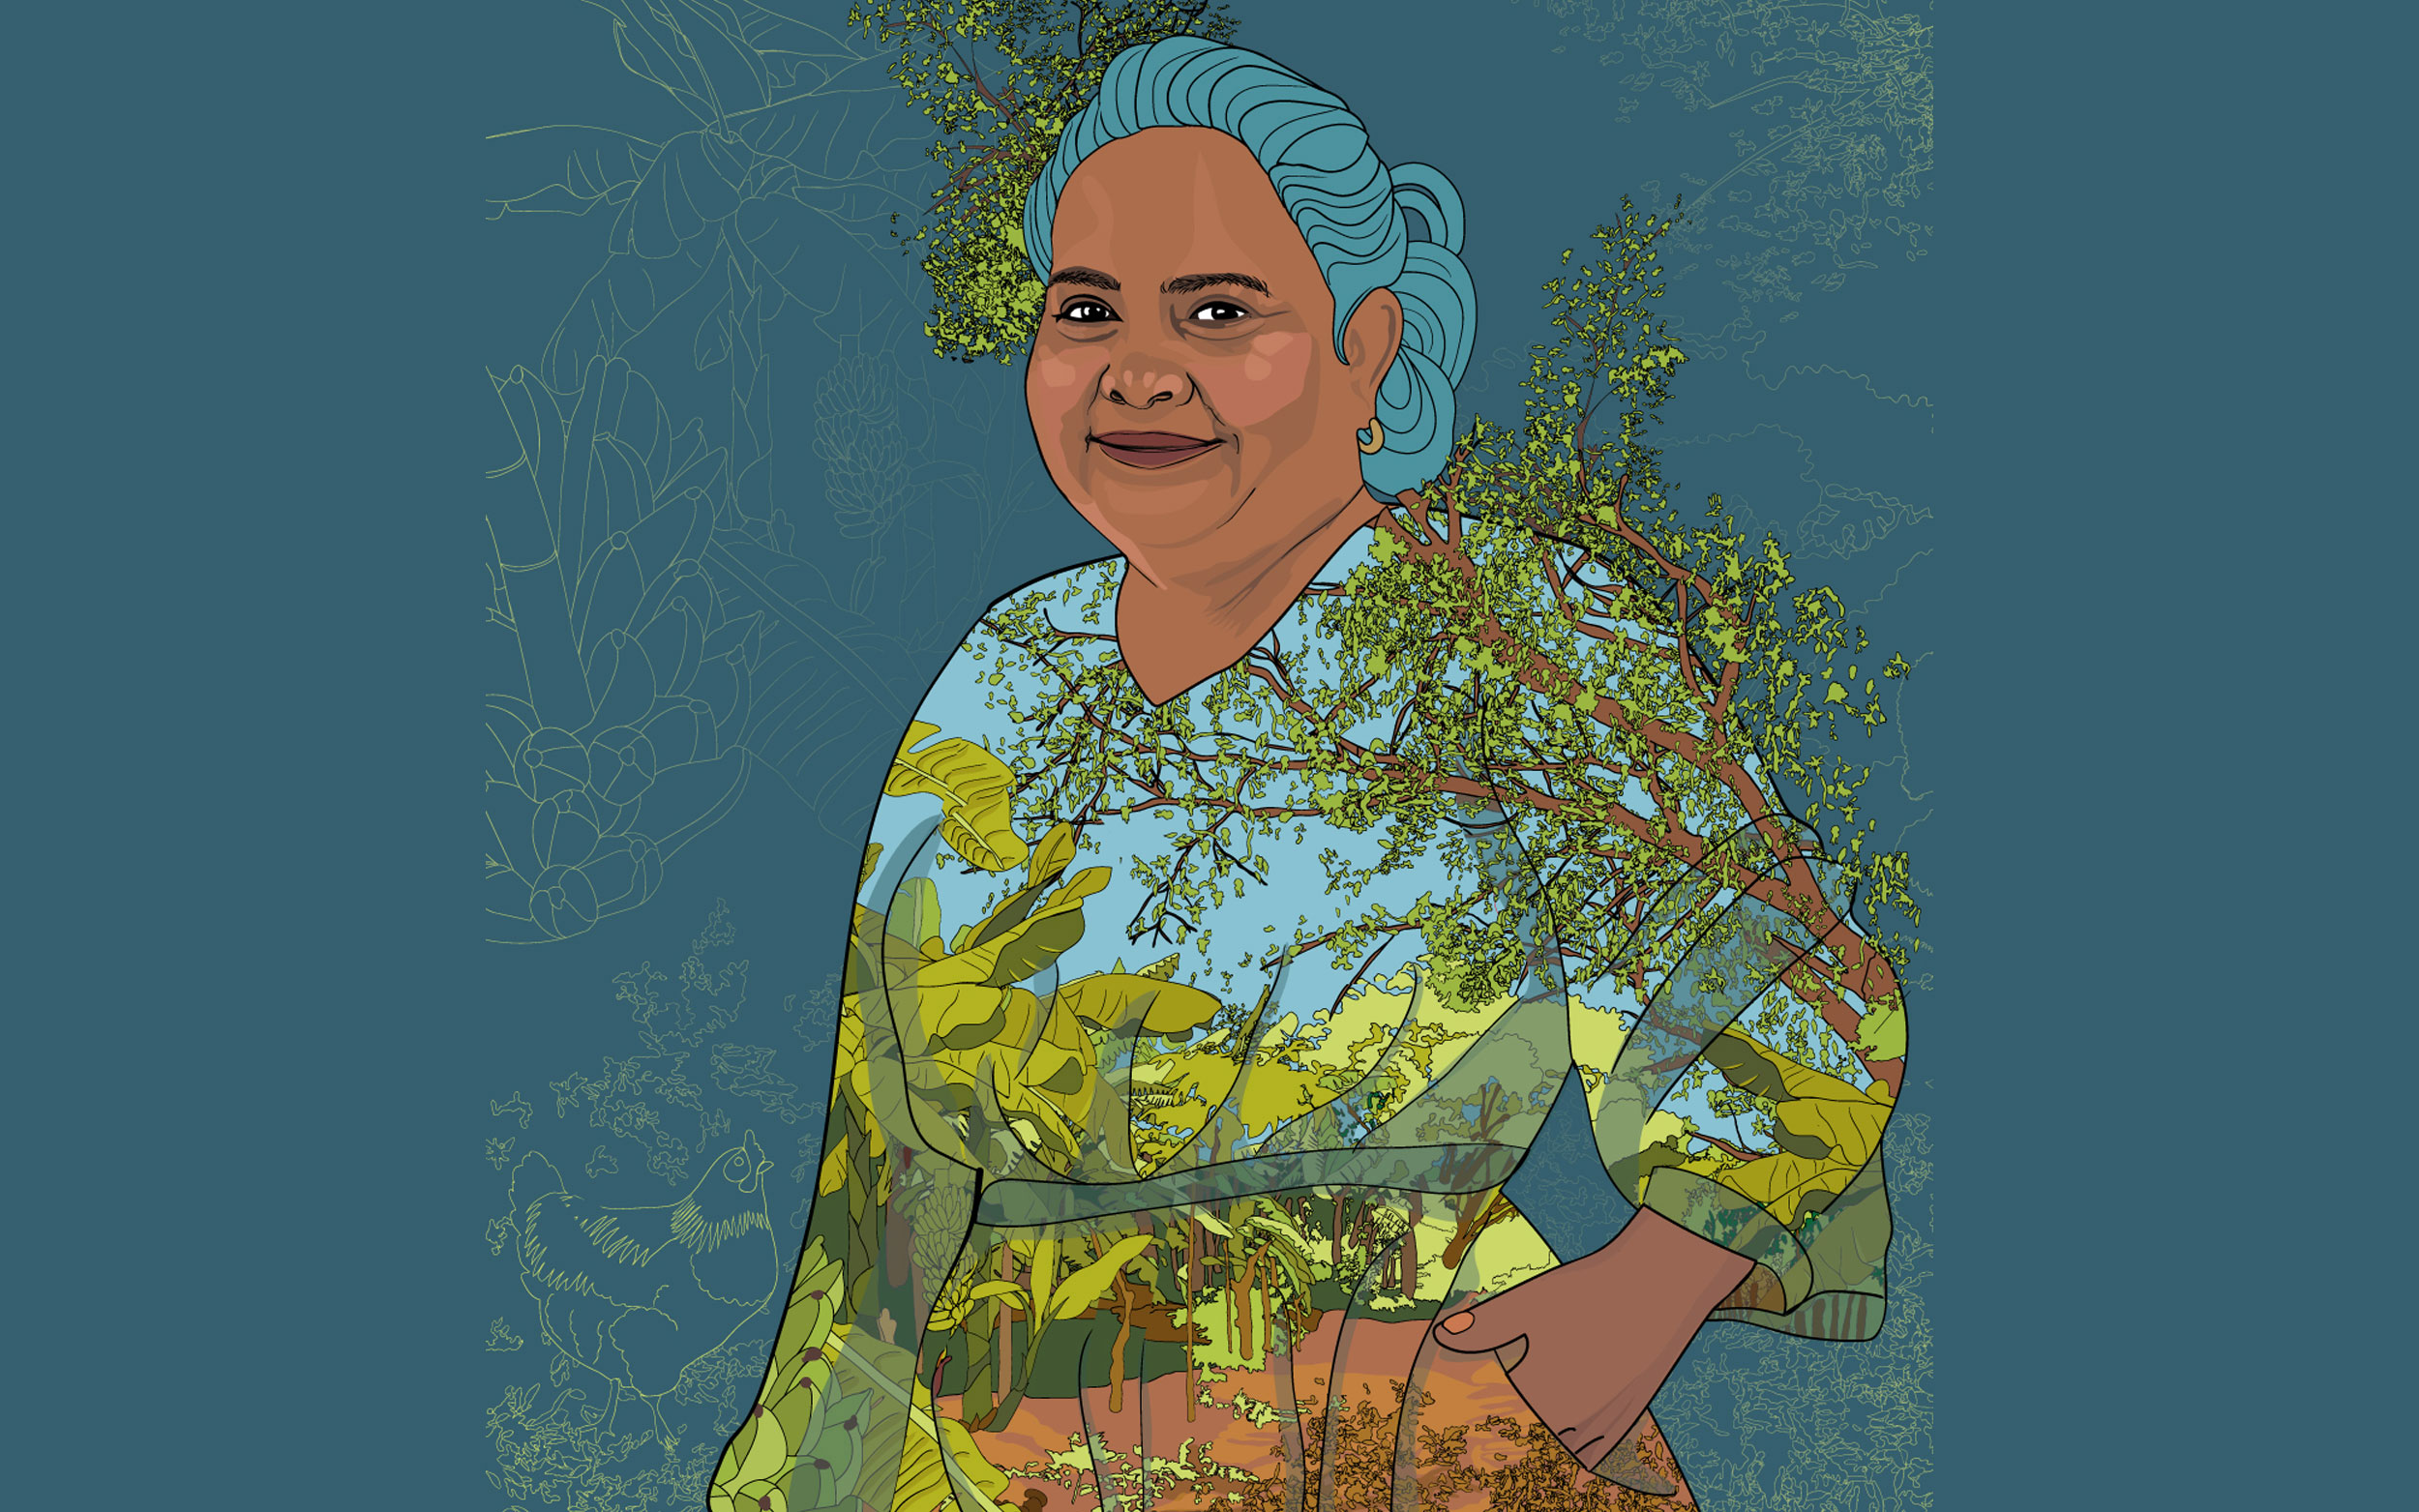 Retrato ilustrado de Beatriz con un vestido estampado con un paisaje, del que surgen ramas de árboles. Fondo con plantas